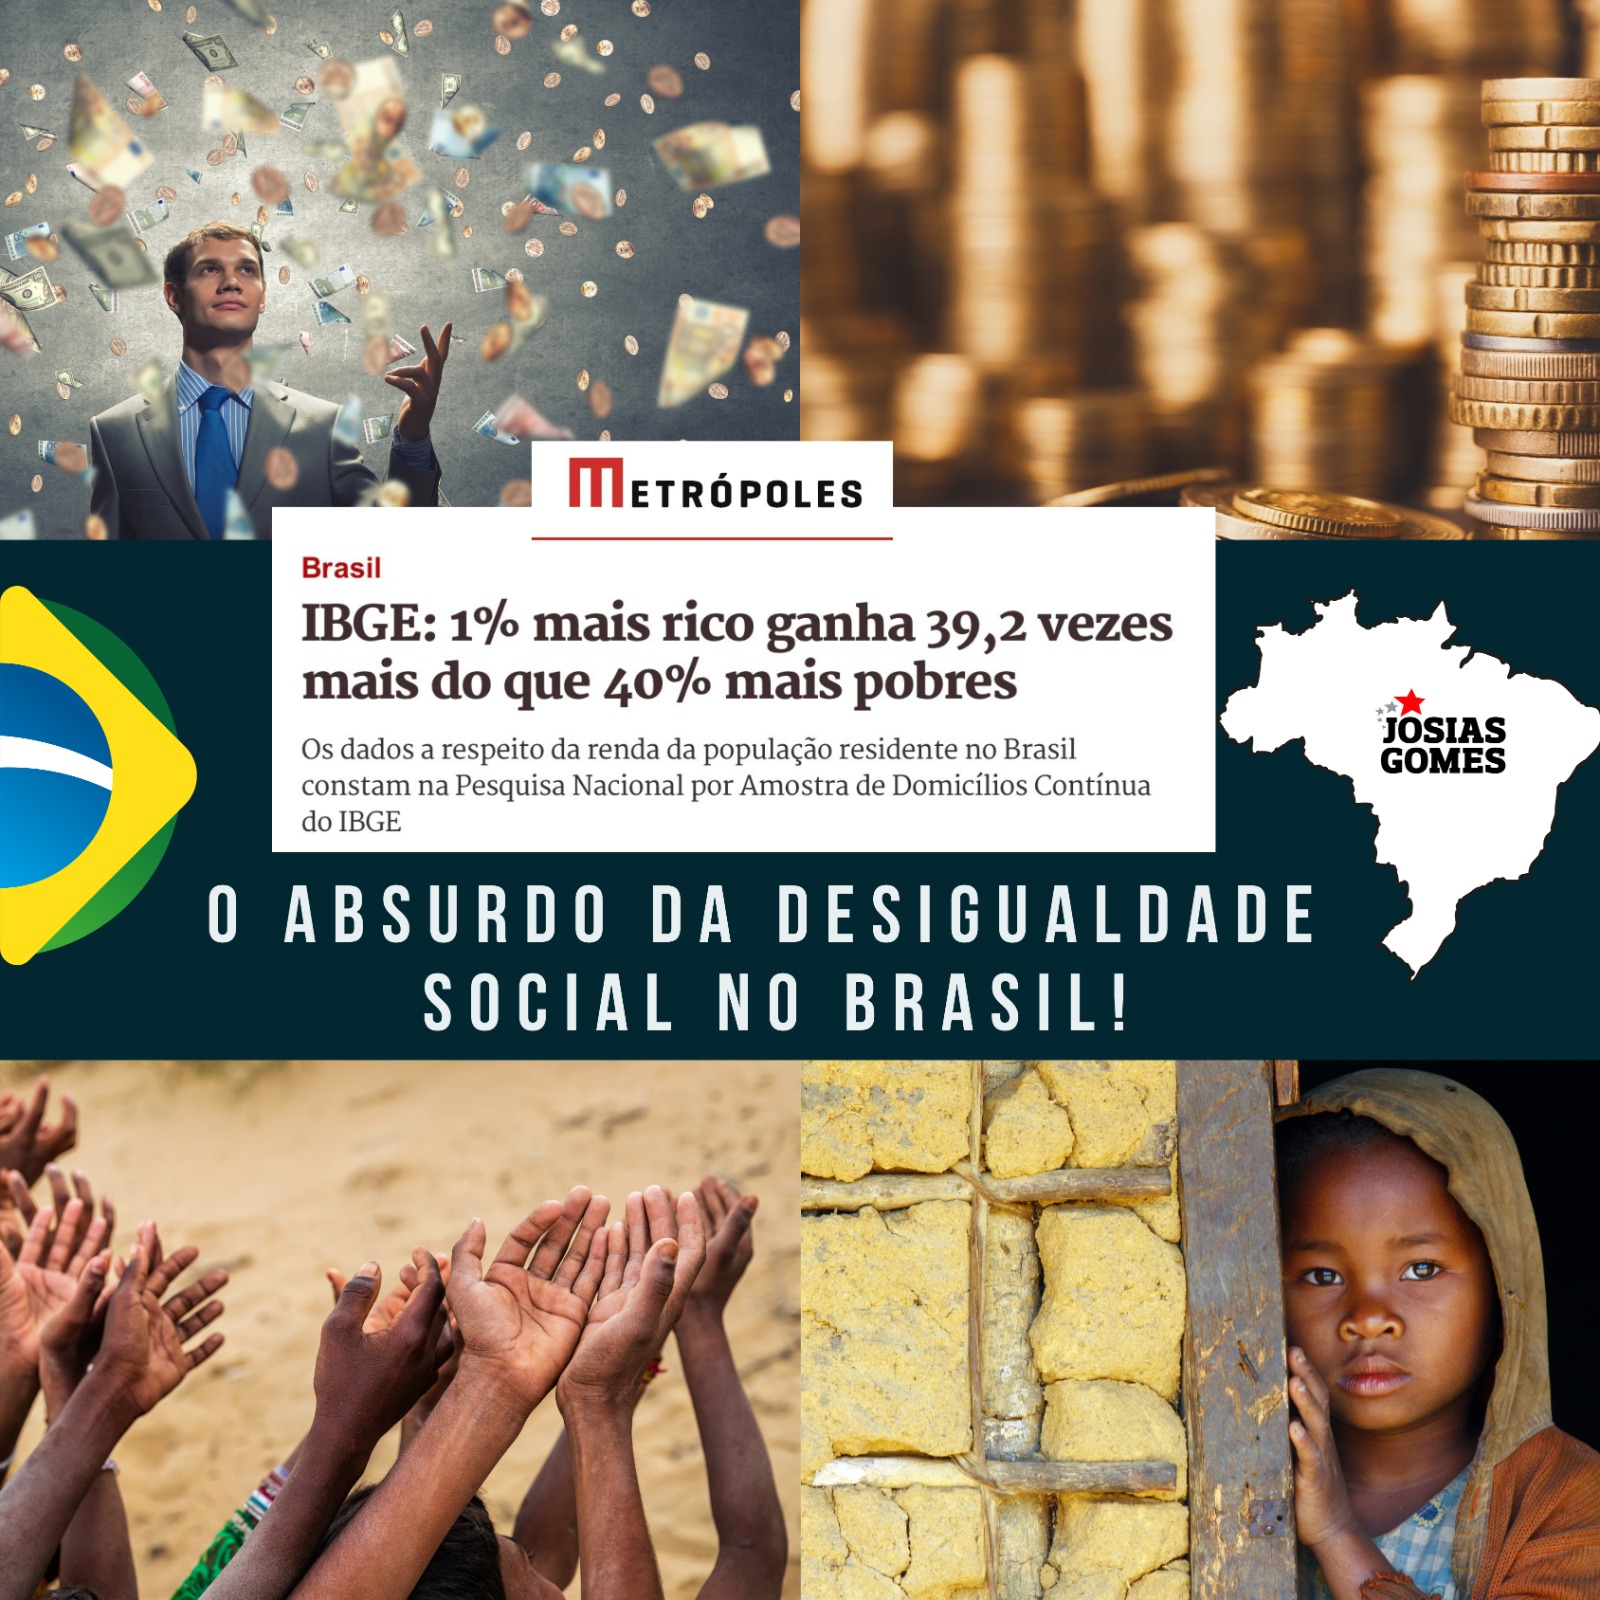 Desigualdade No Brasil Precisa Ser Enfrentada De Frente! O PT Cumpre Este Papel De Transformar O País Numa Nação Justa E Soberana!